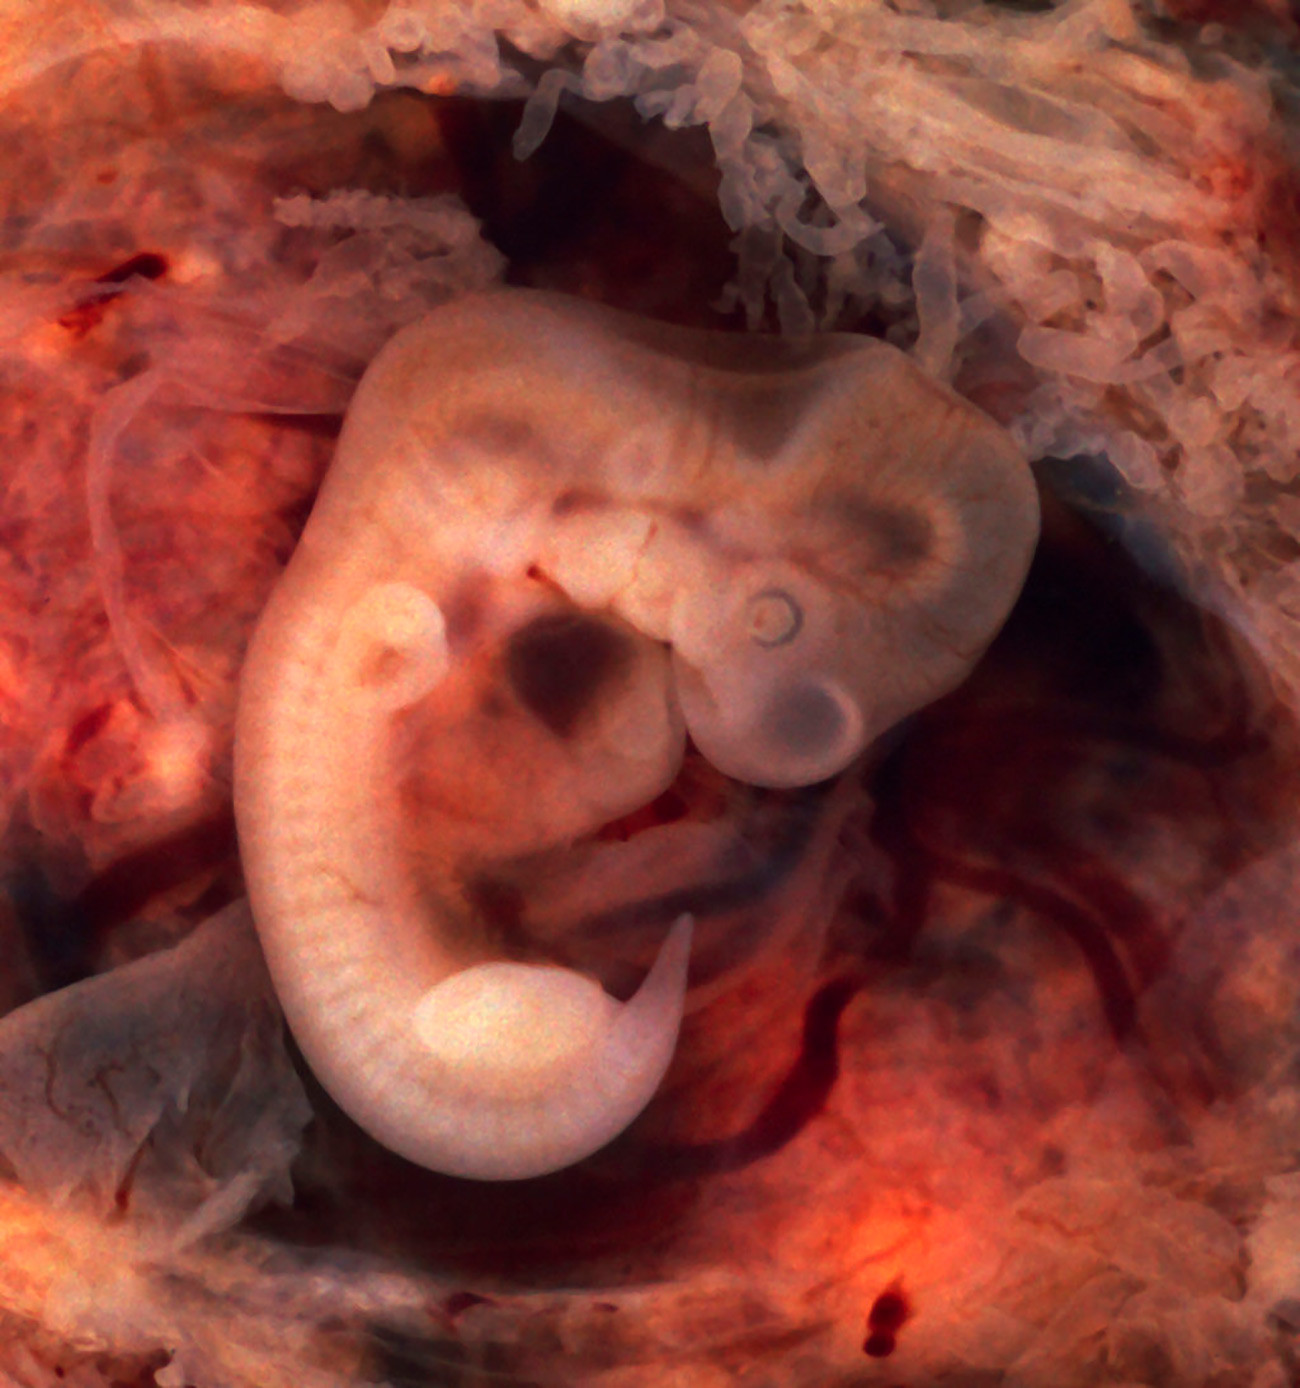 Tako izgleda človeški zarodek pri enem mesecu